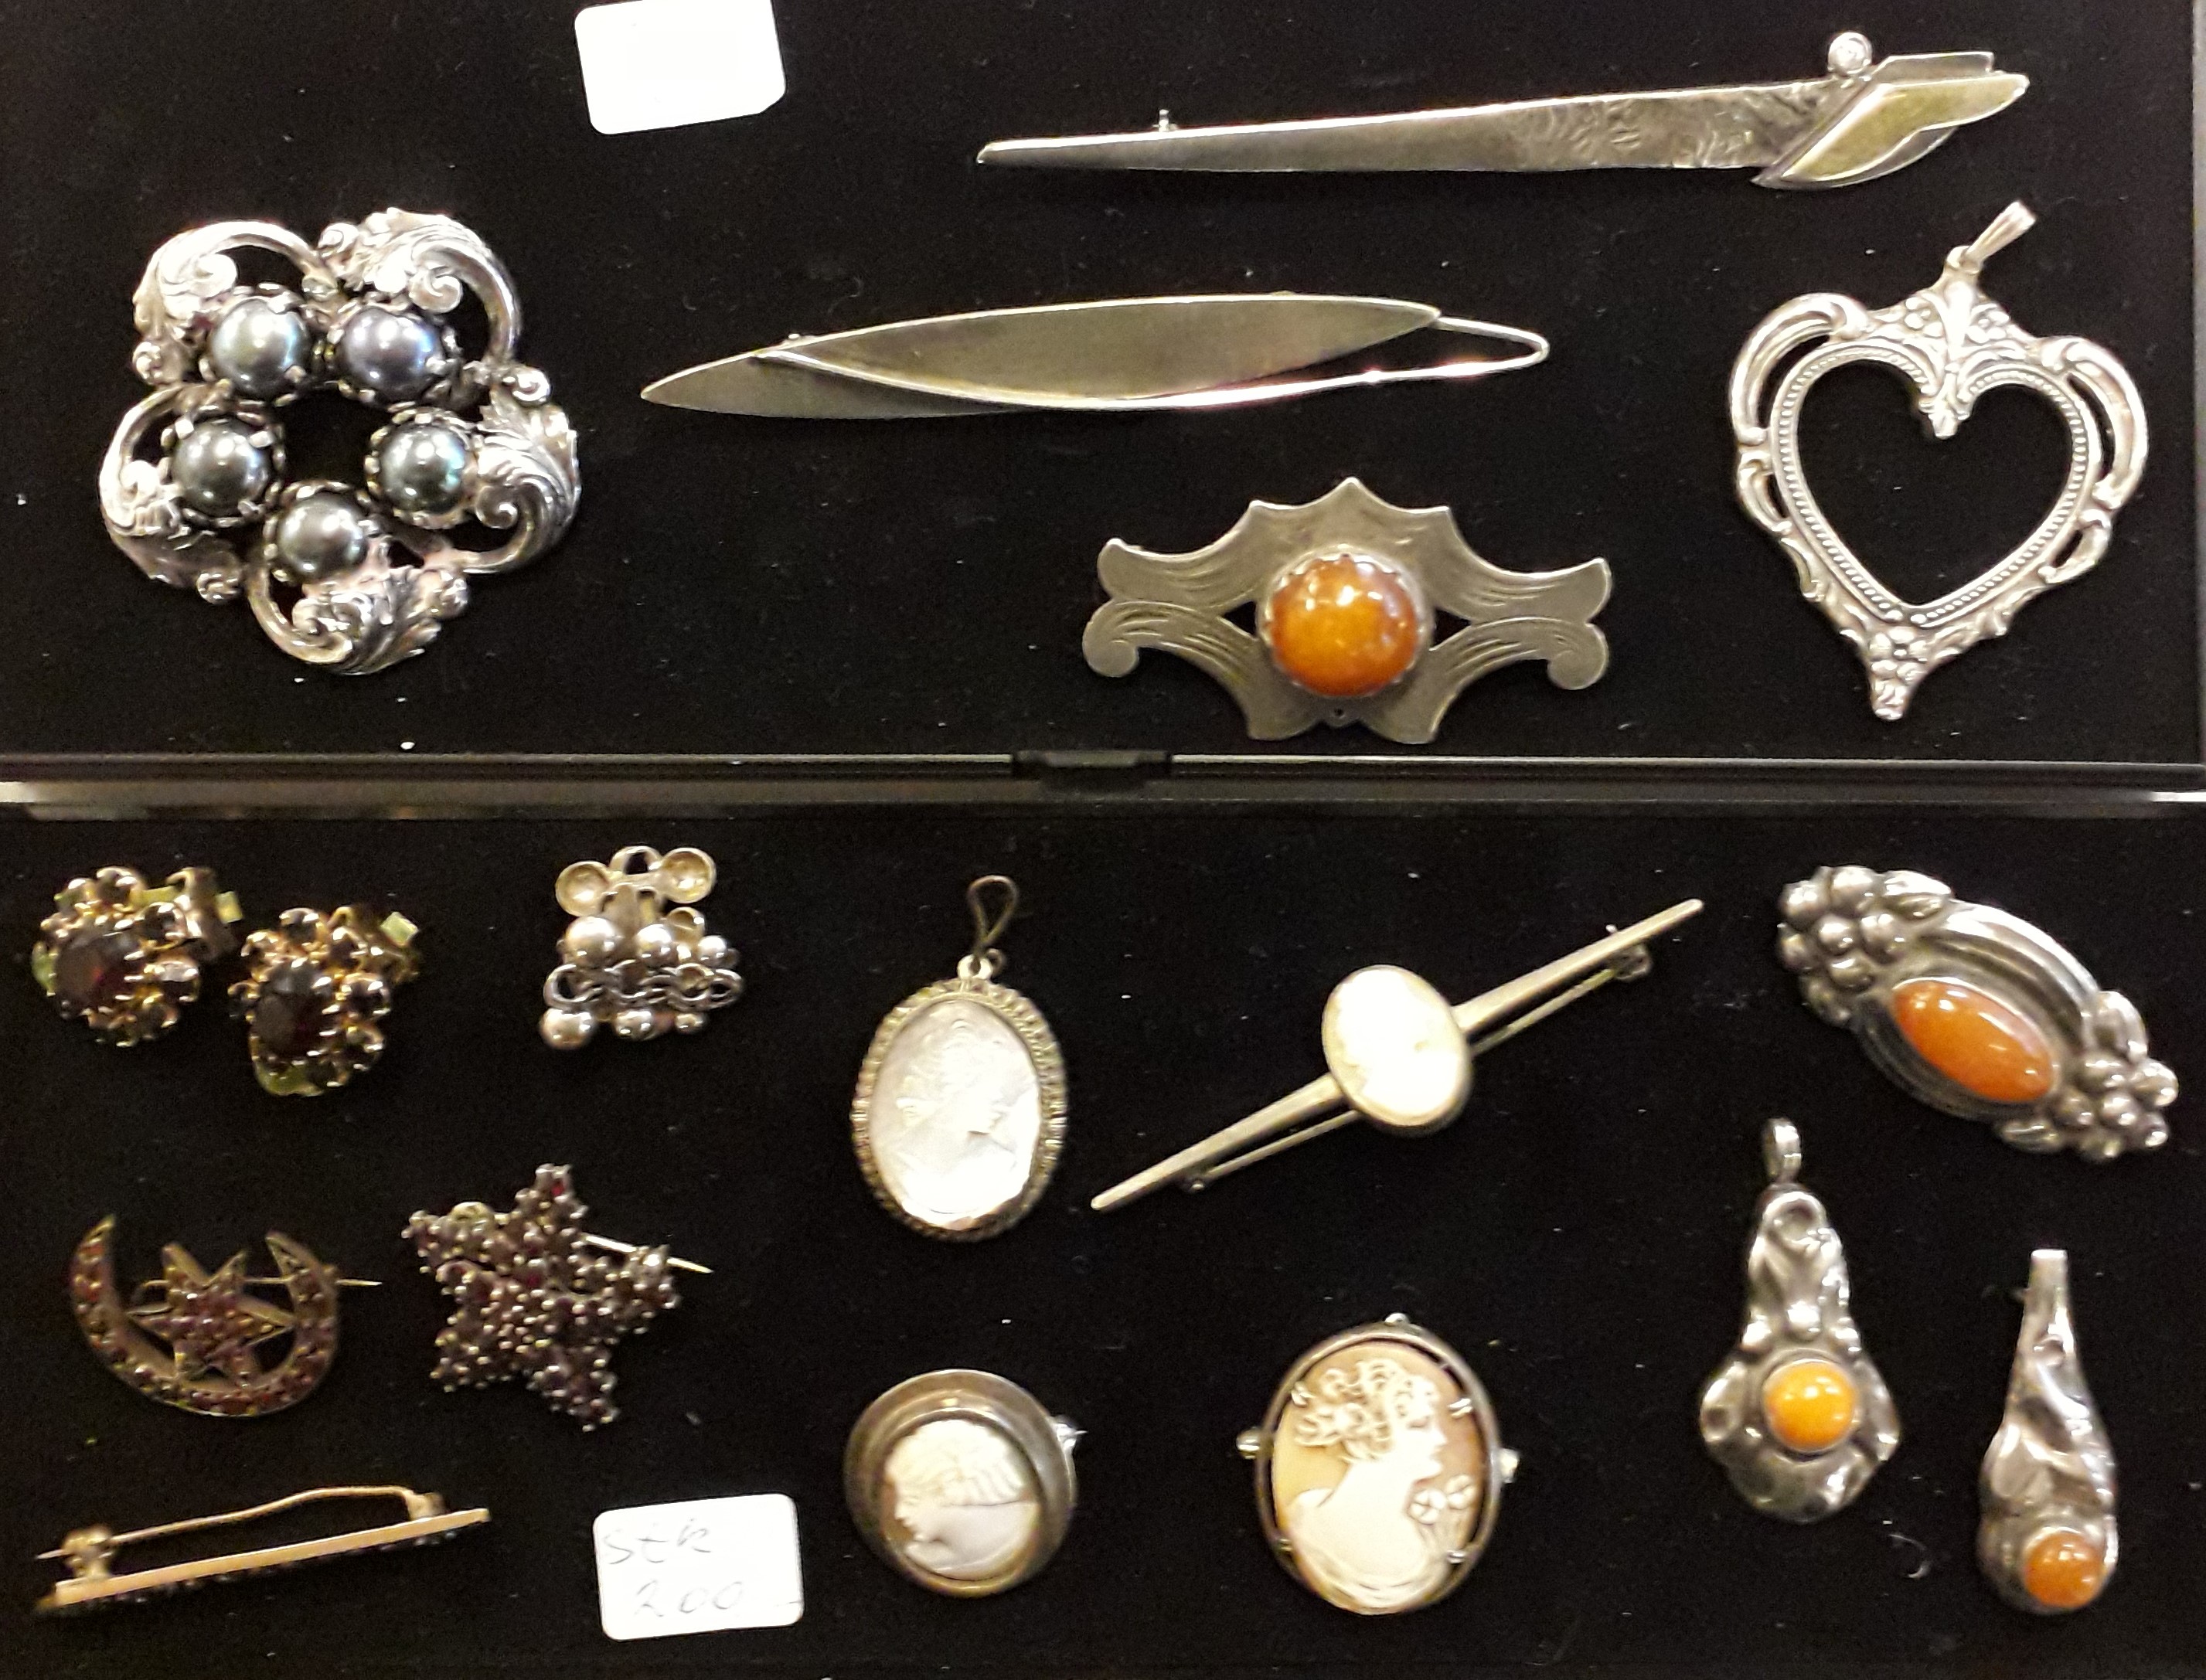 Watchful ledningsfri Godkendelse SMYKKER, sølv sølvsmykker brugte gamle antikke købes sælges